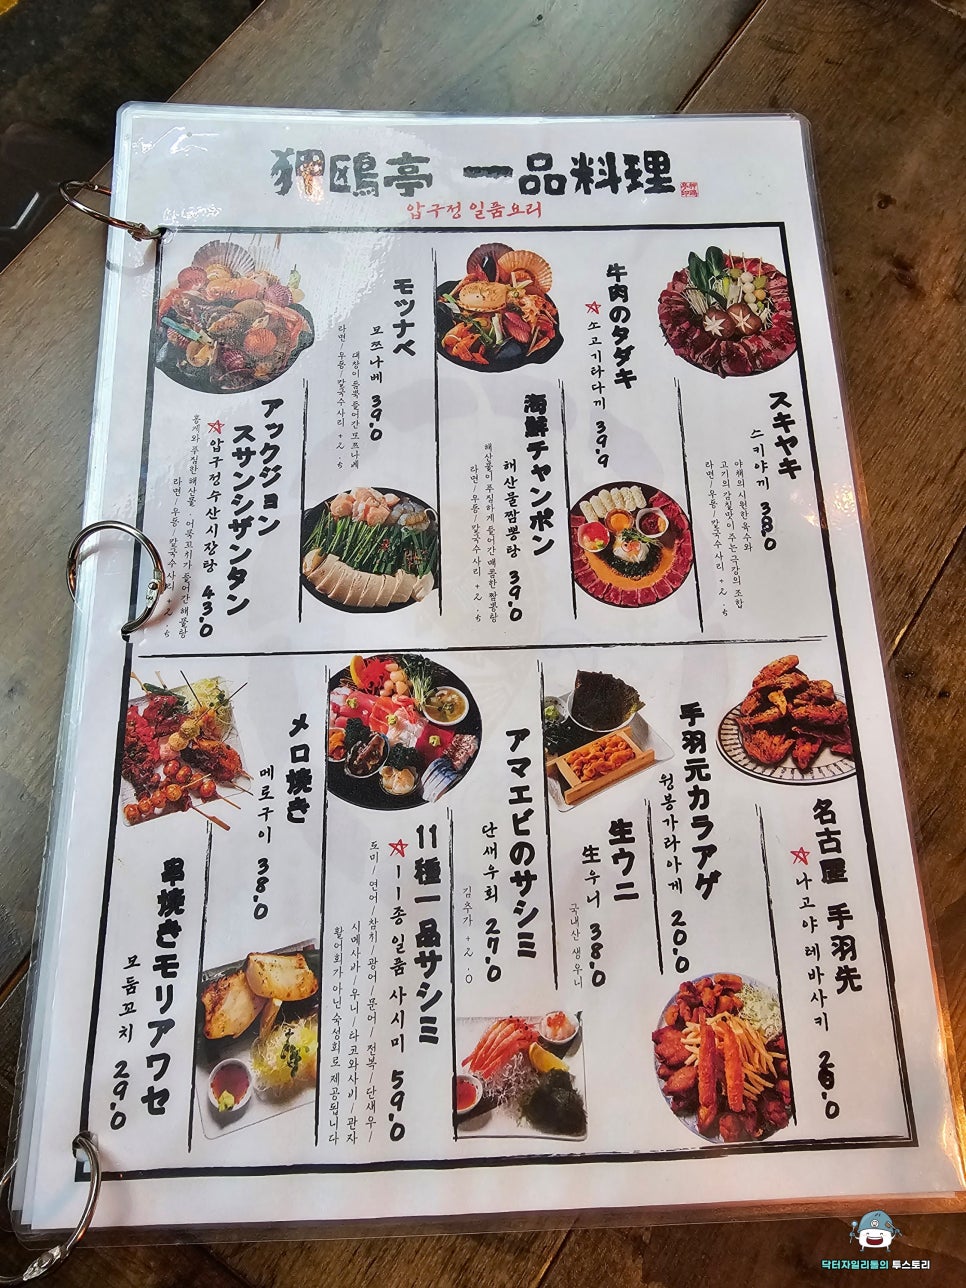 압구정로데오 맛집 ! 분위기 좋은 이자카야 압구정수산시장 본점에서 먹는 일본 느낌 그대로의 음식